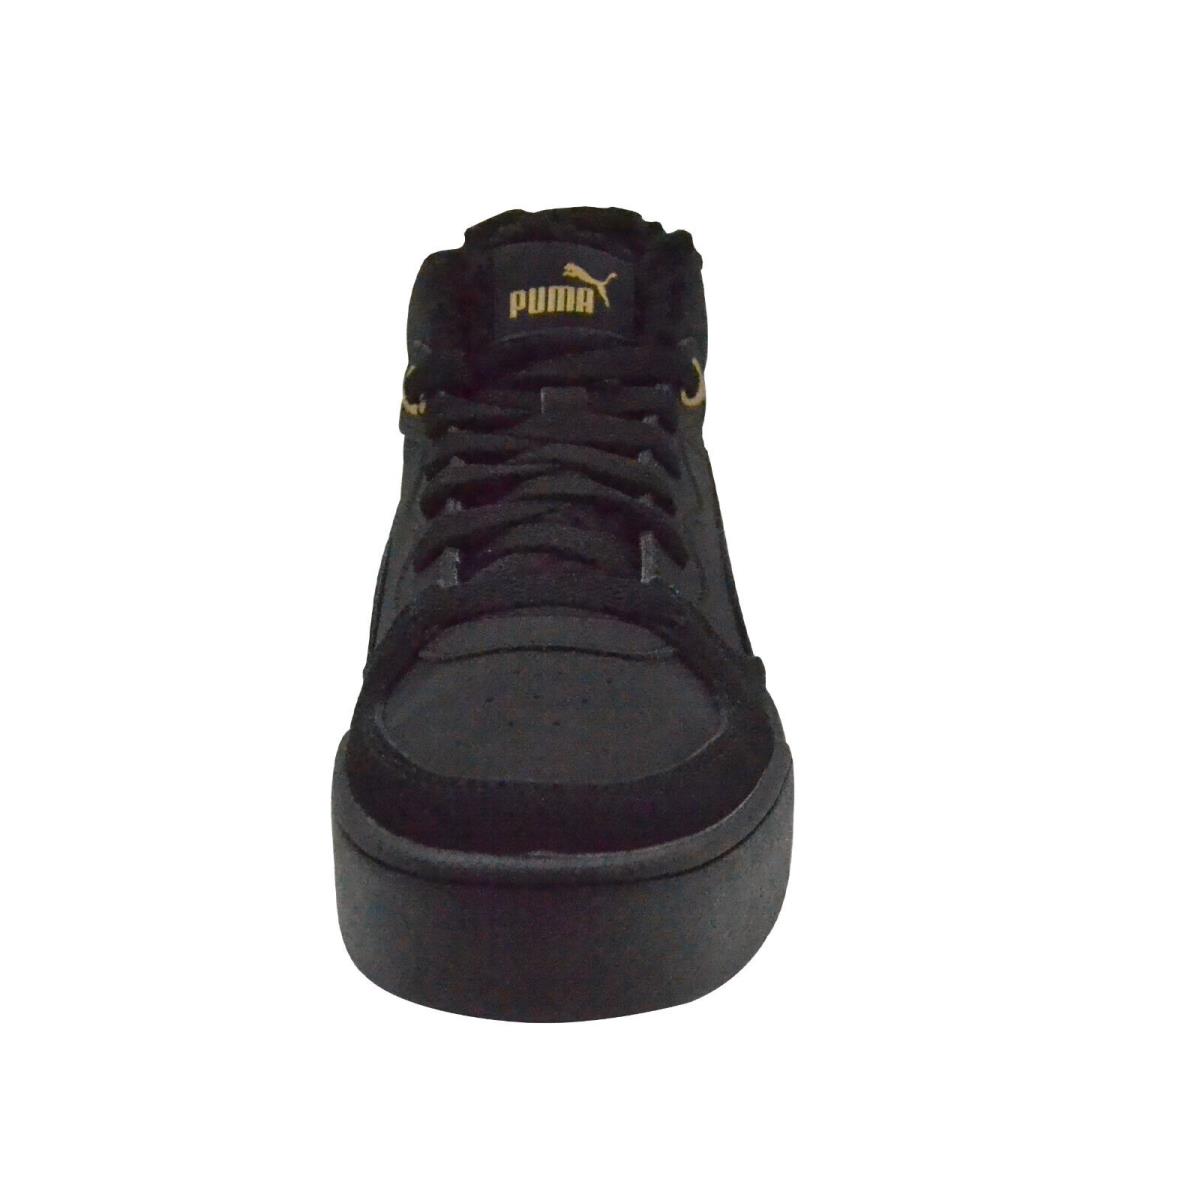 Puma shoes SKYE DEMI TEDDY - Black 3